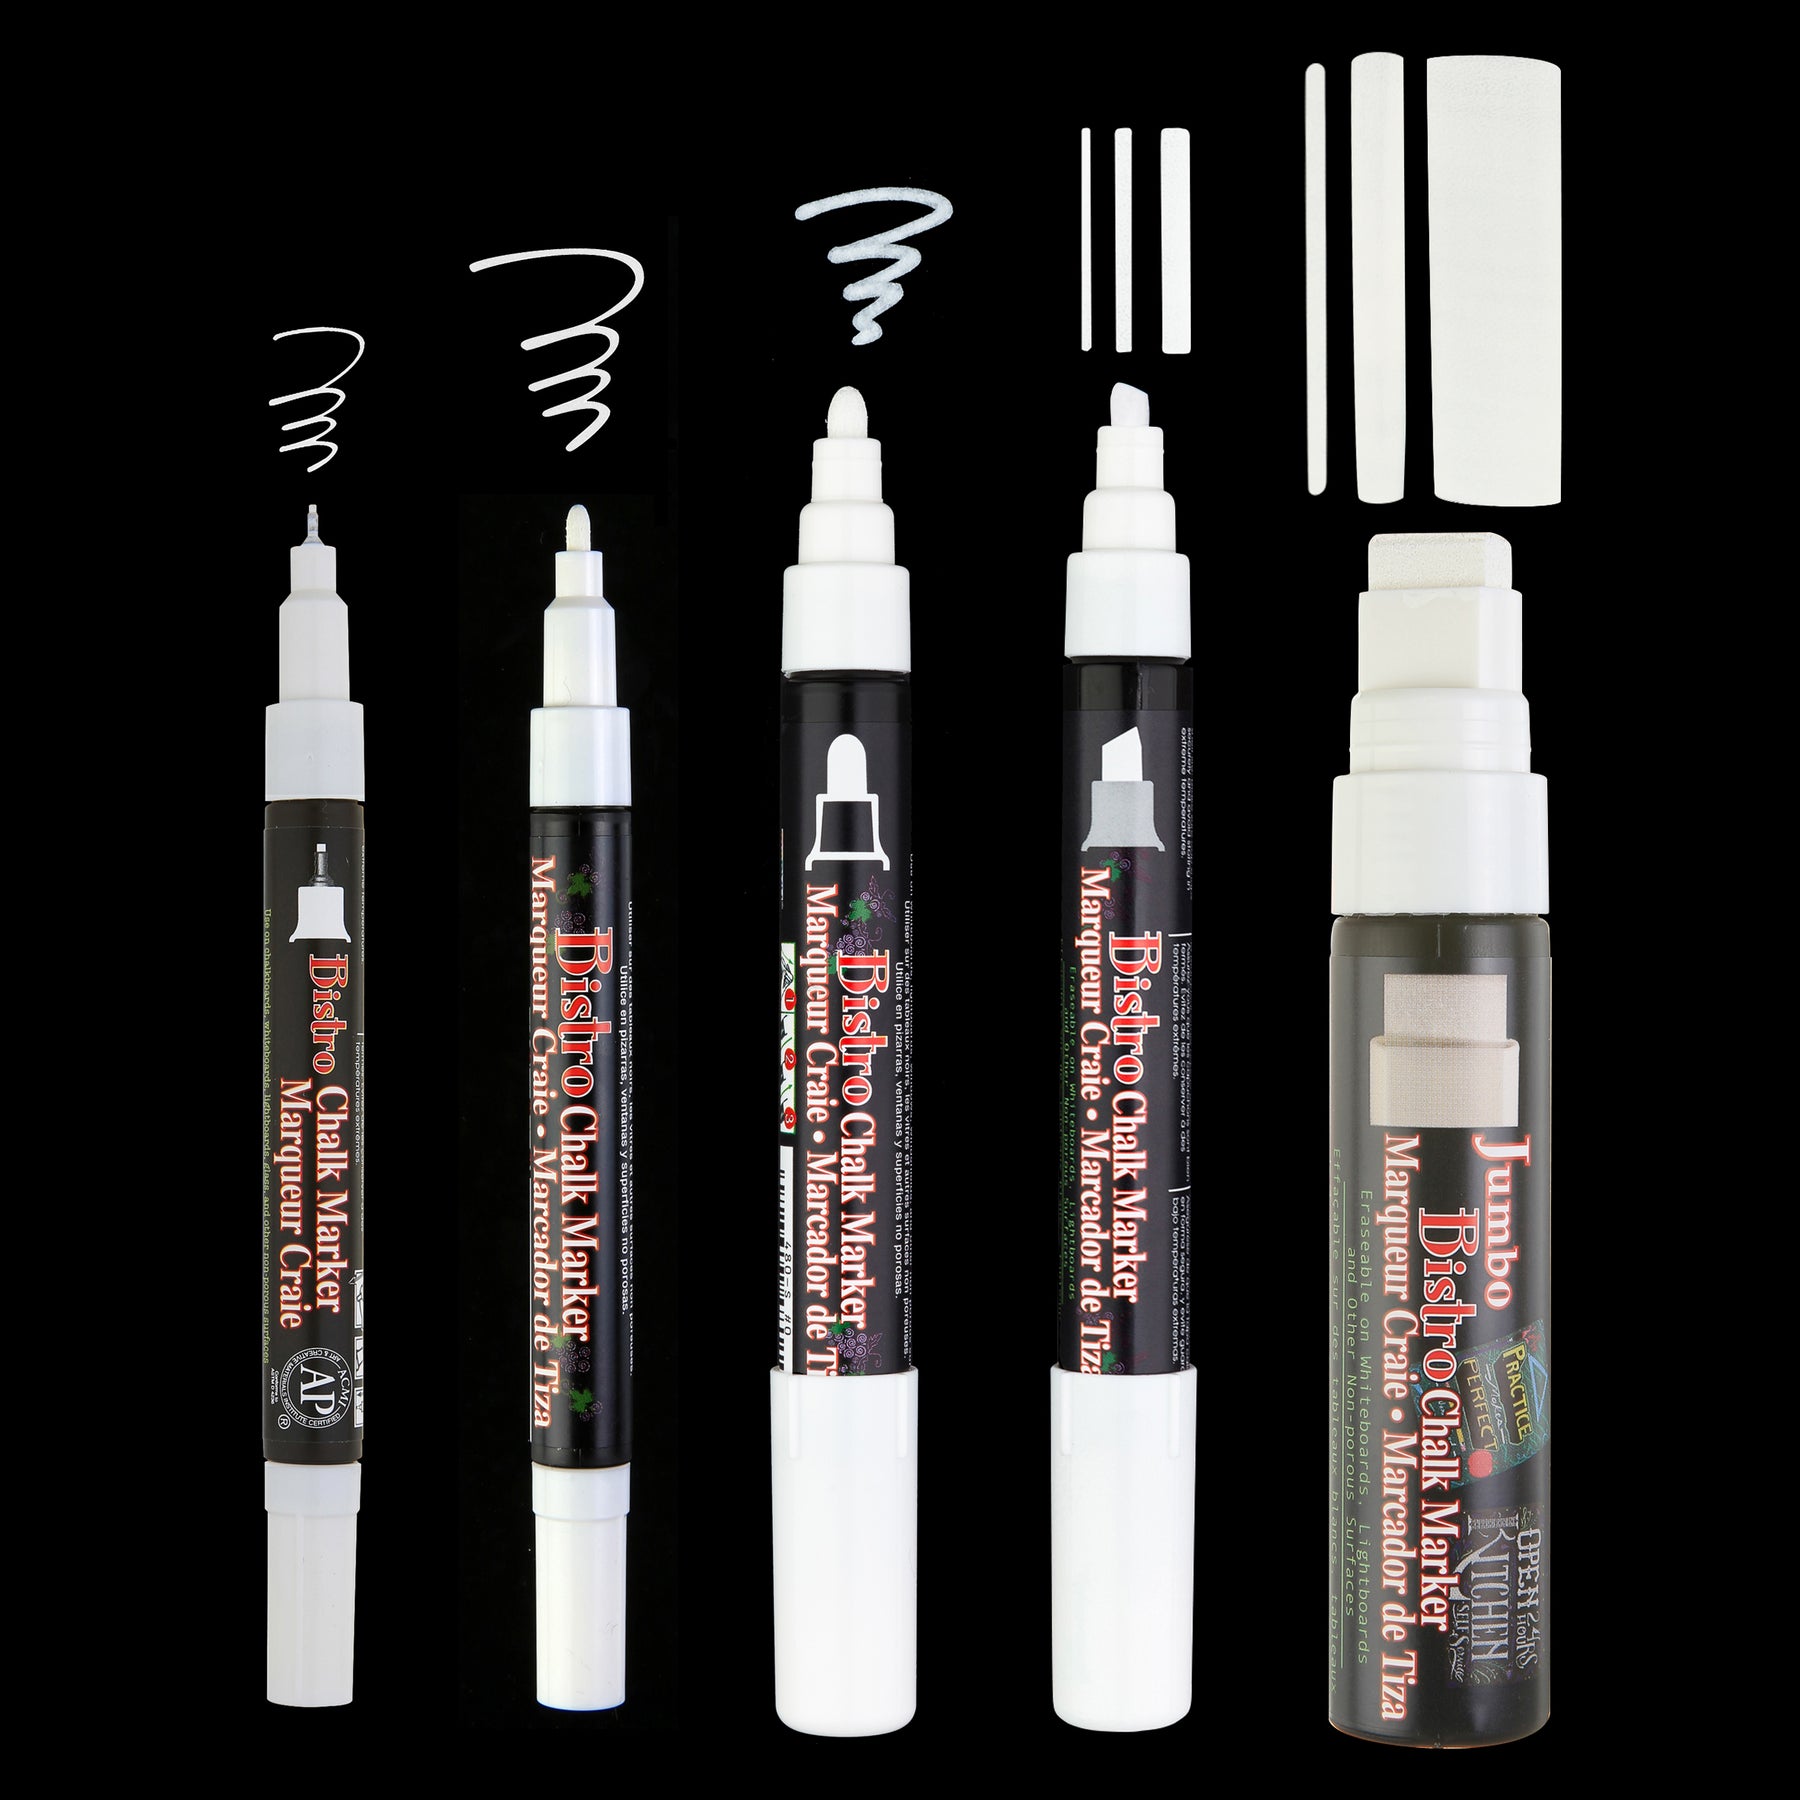 12 Pack: Marvy® Uchida Bistro Extra-Fine Chalk Marker